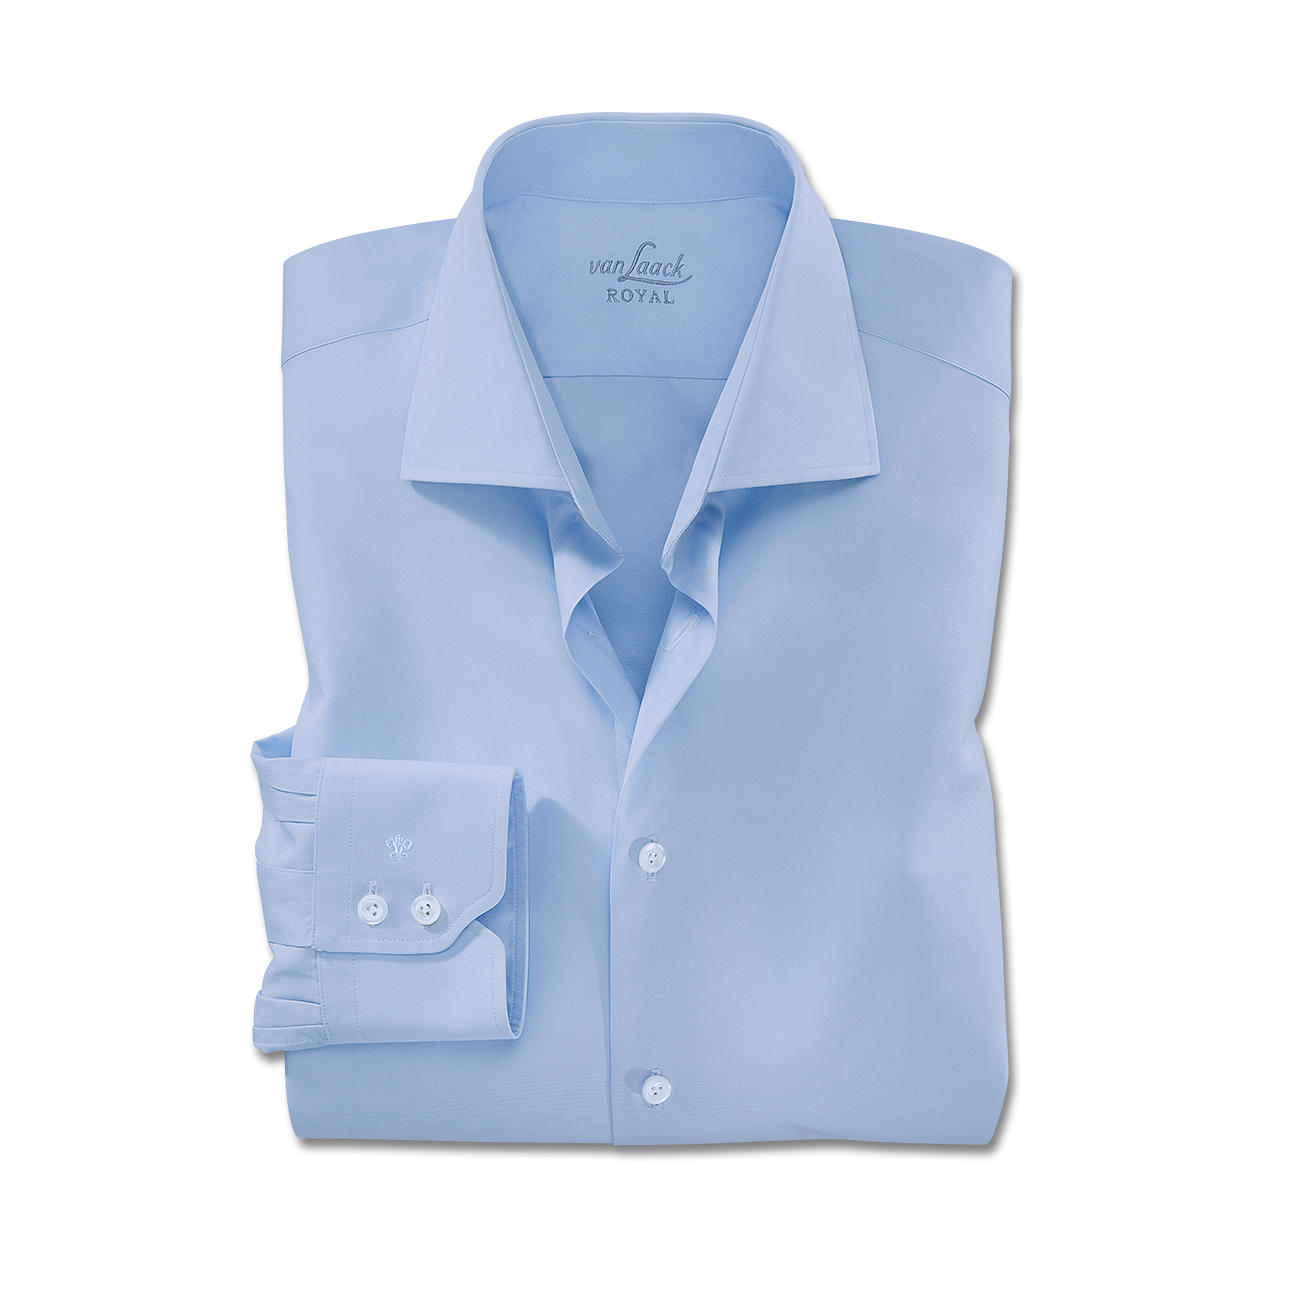 Van Laack Shirts manschetter med enkel knapp, ljusblå OBZVDGC